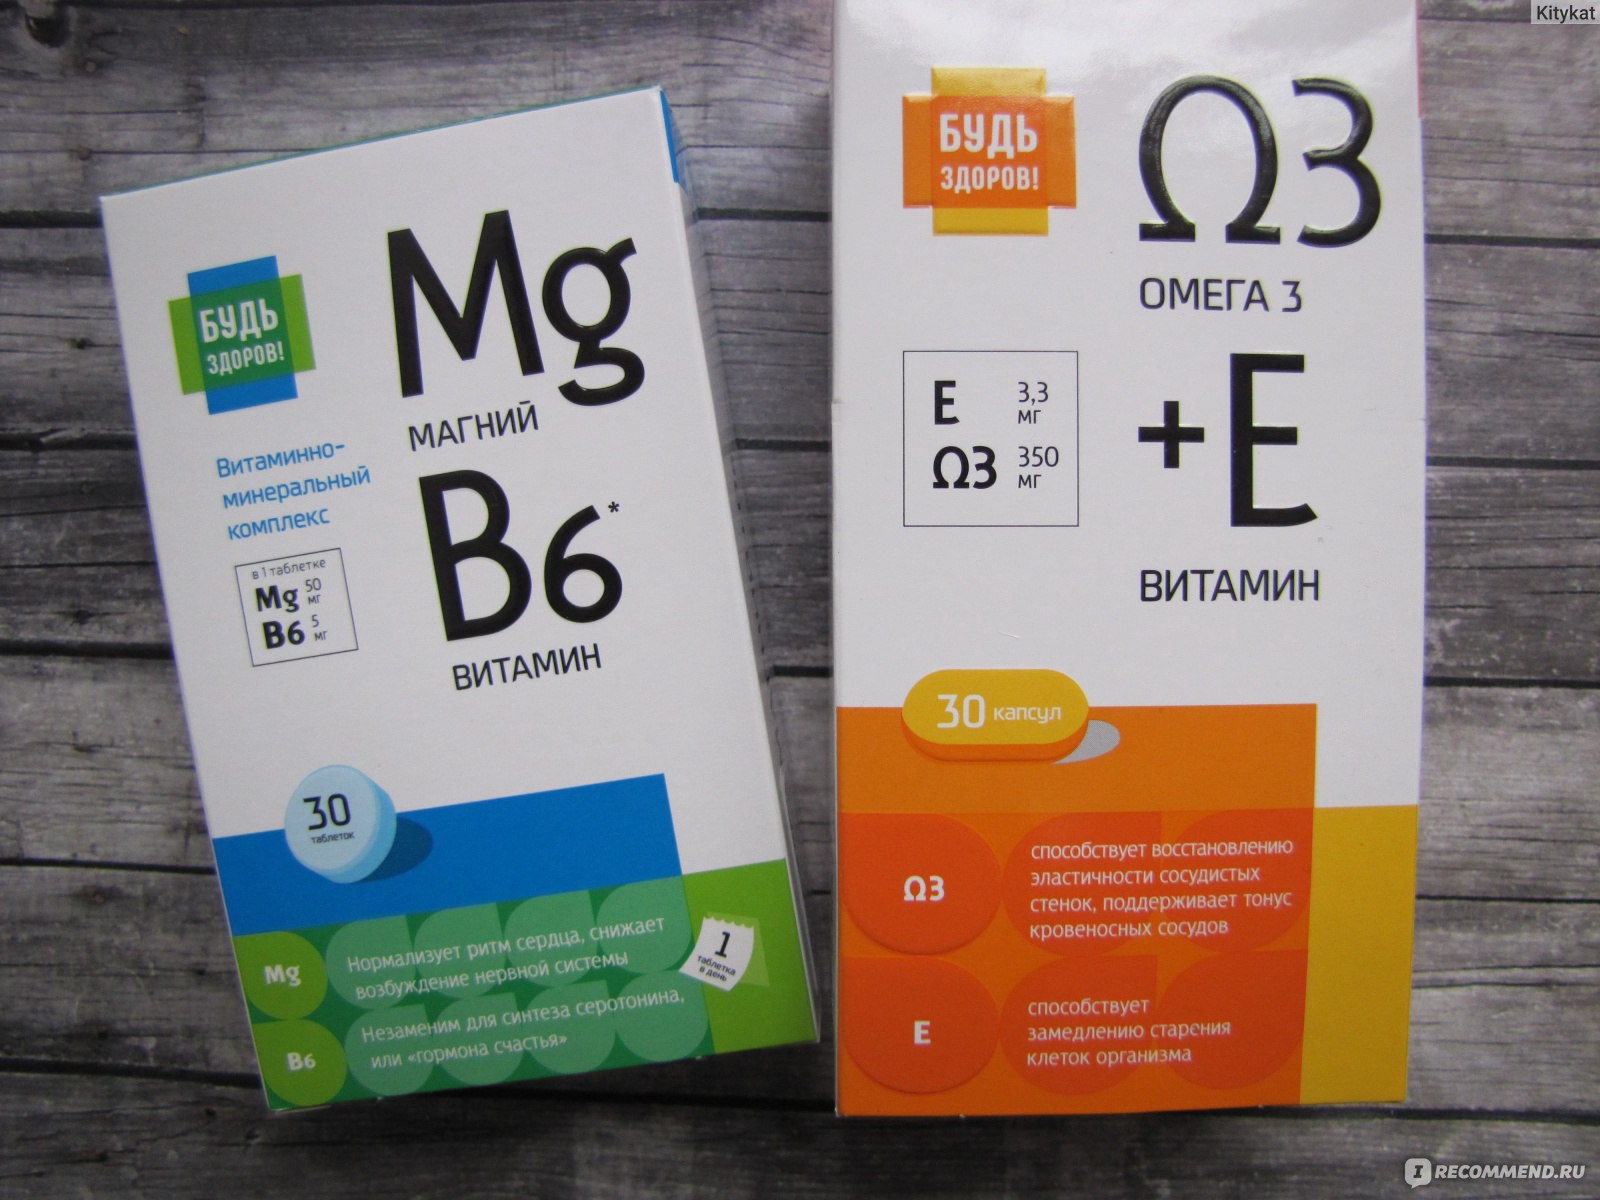 Витамин в есть в таблетках. Будь здоров витамины группы b таб 30. Магний б6 будь здоров витамины. Витаминно минеральный комплекс магний в6 будь здоров. Витаминно минеральный комплекс магний в6.